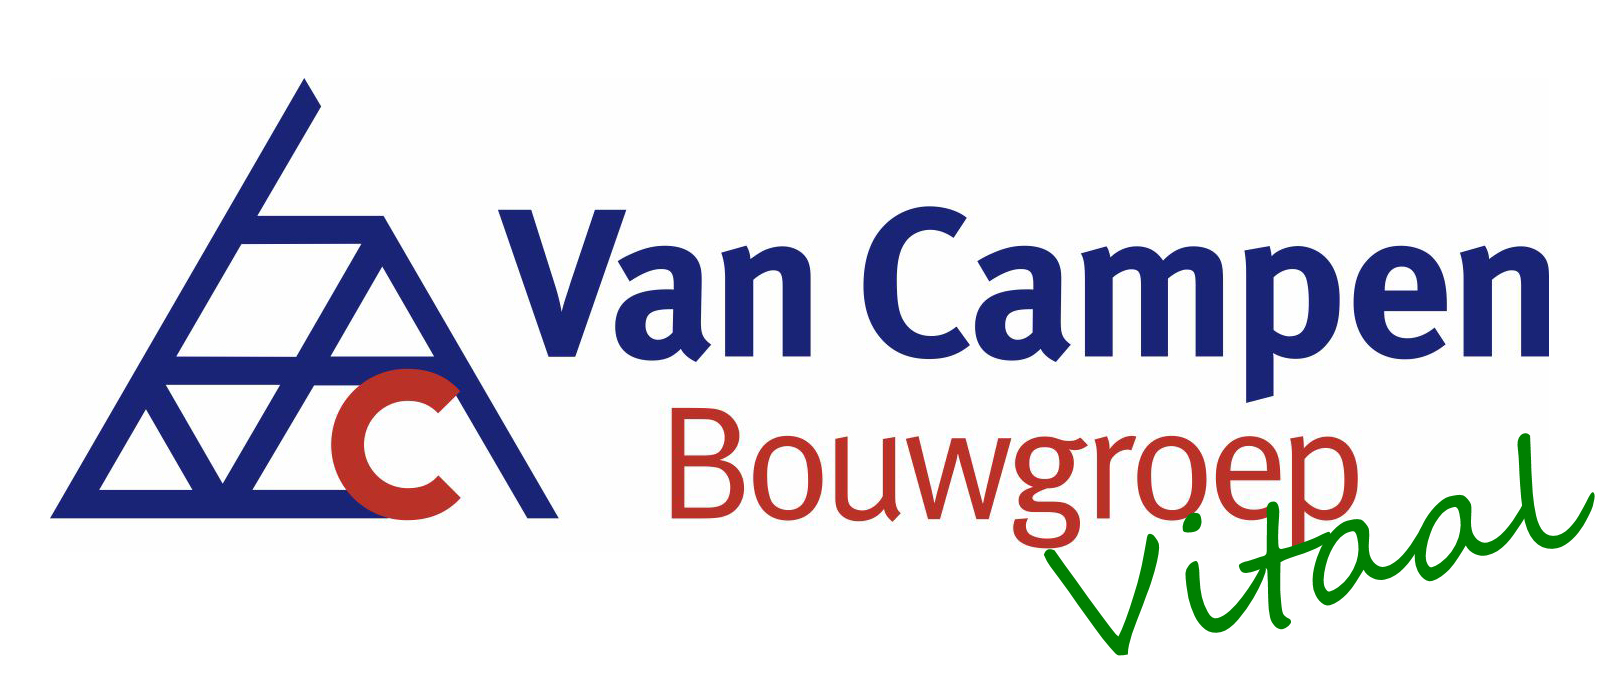 Van Campen Bouwgroep Vitaal